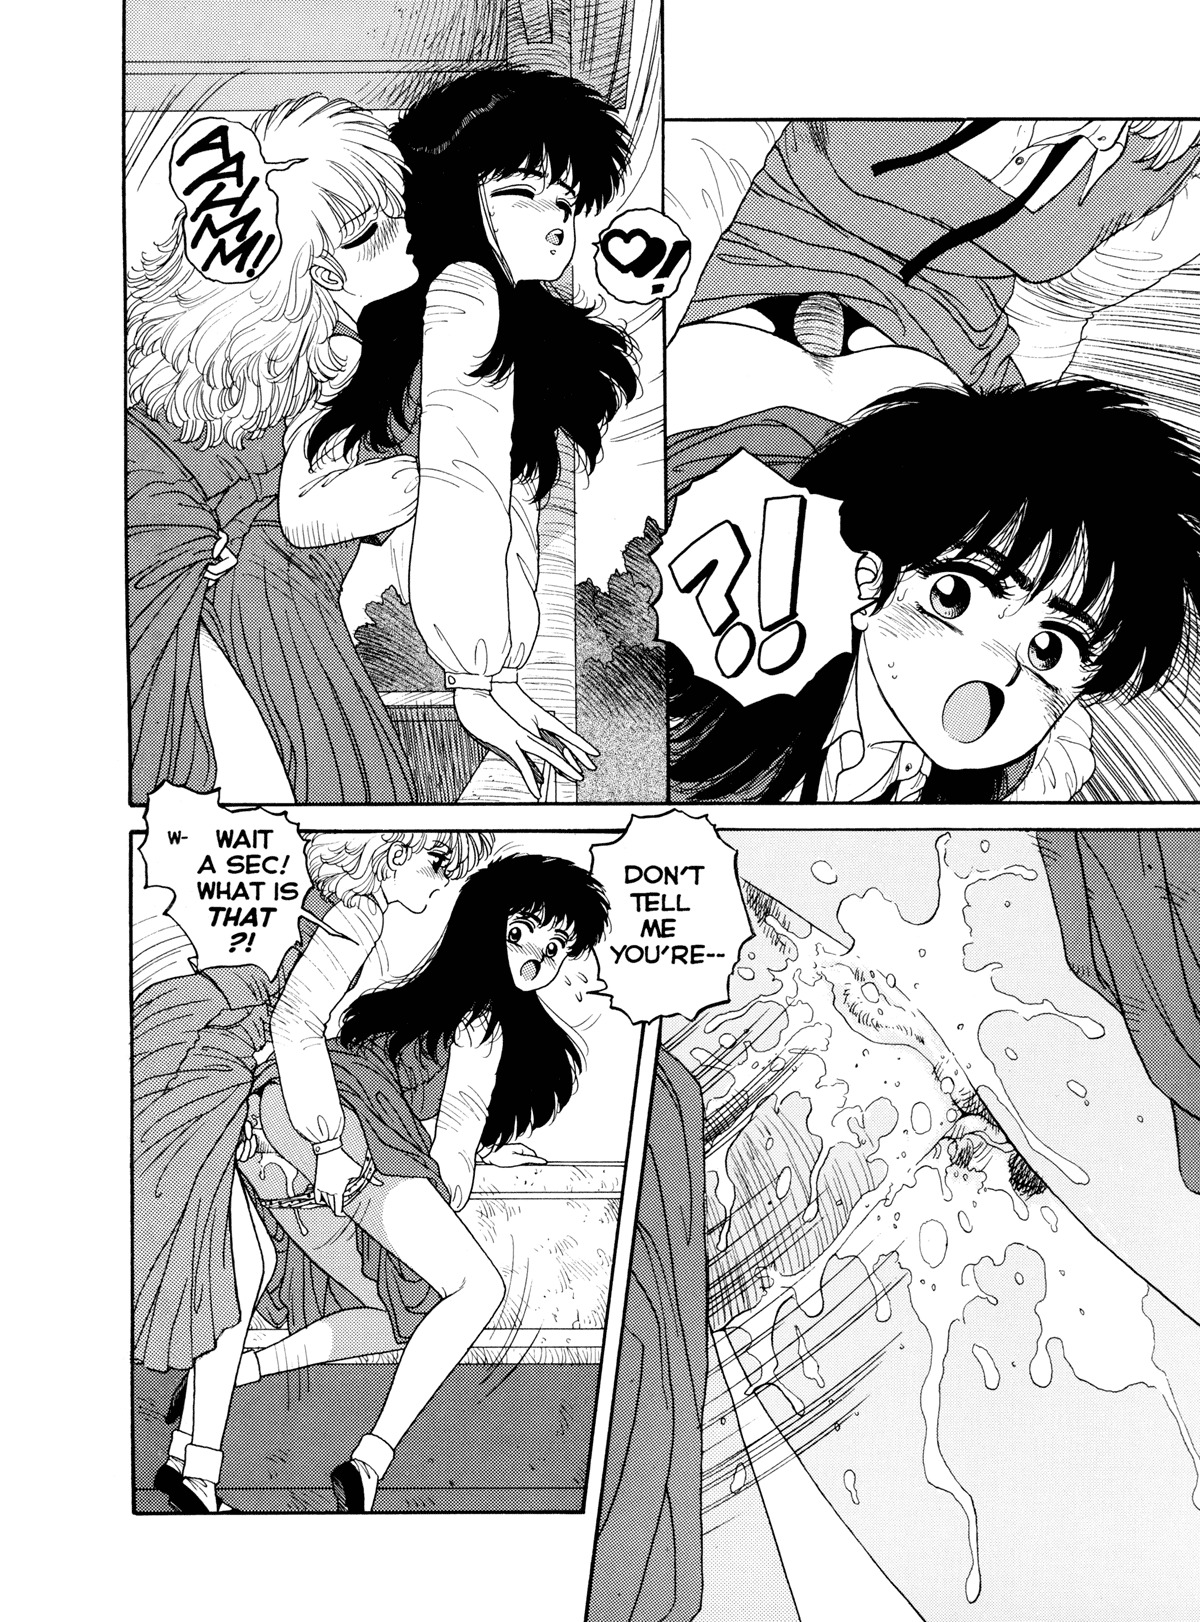 Misty Girl Extreme 36 hentai manga